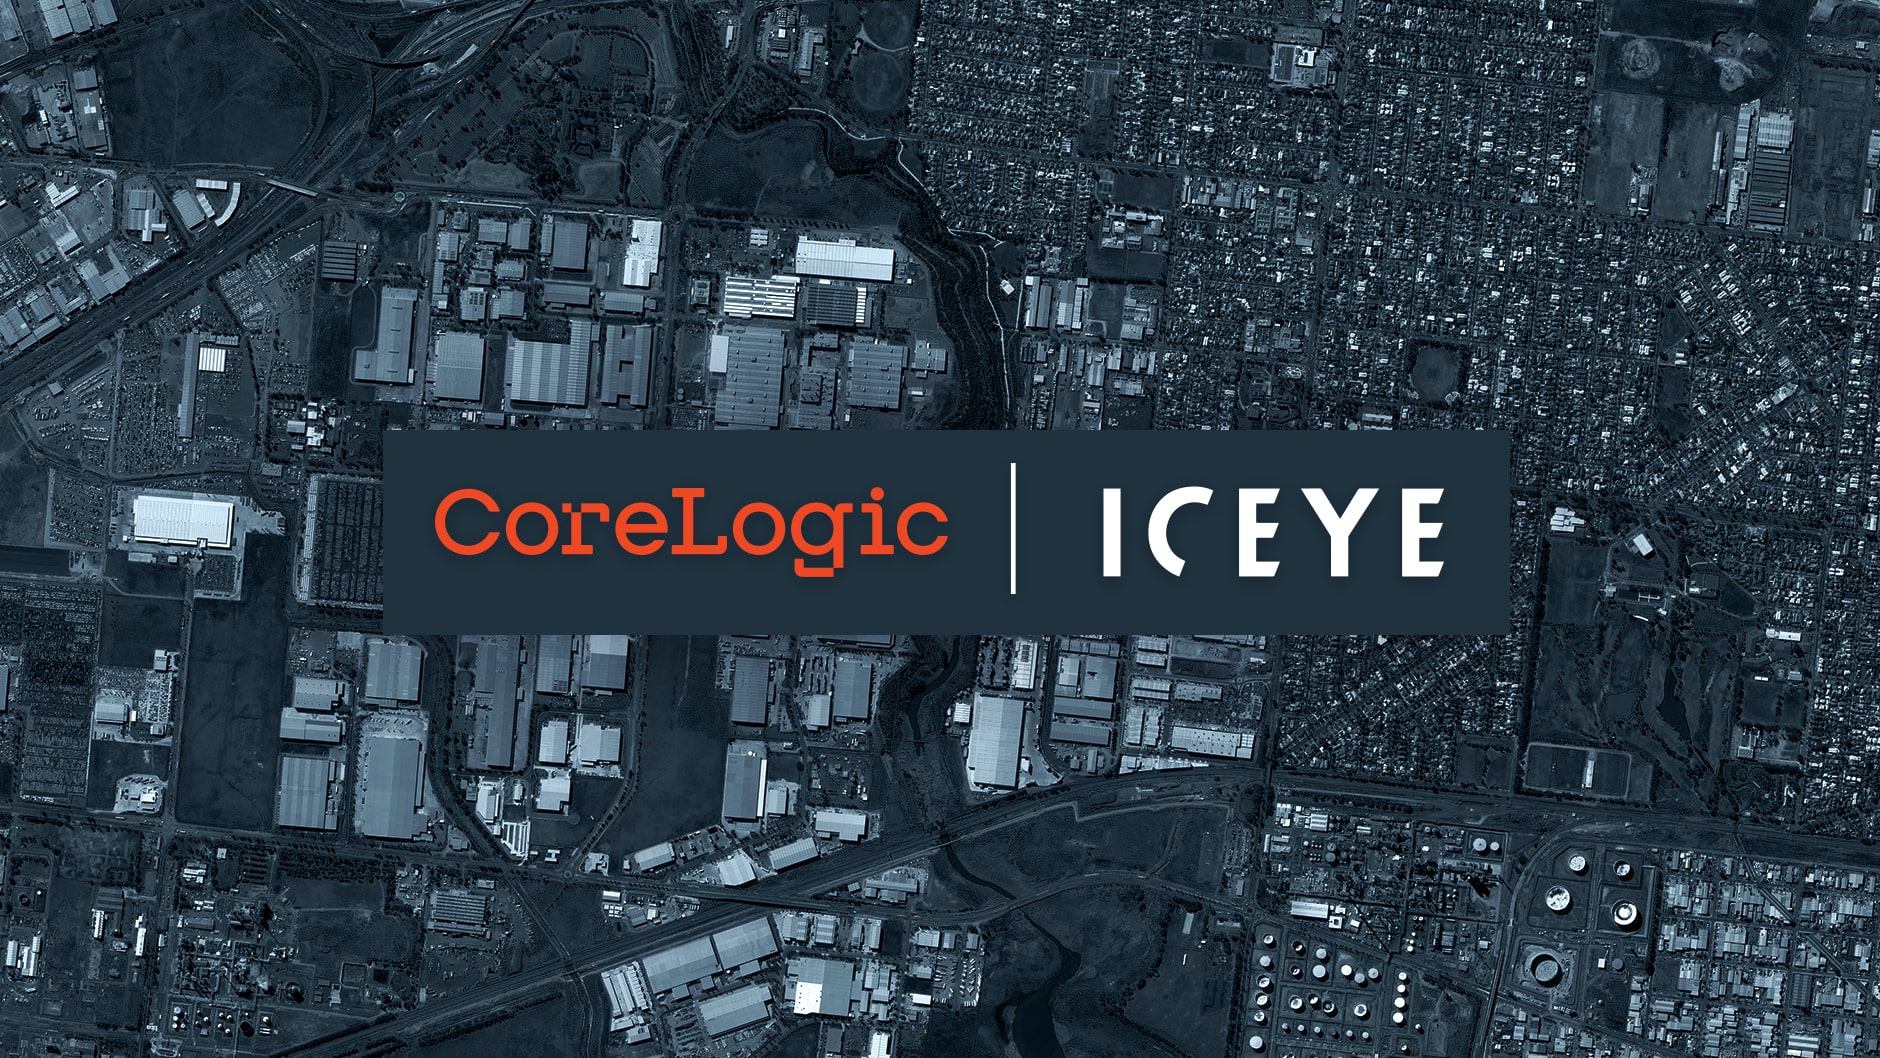 ICYC and Corelogic logo over satellite image